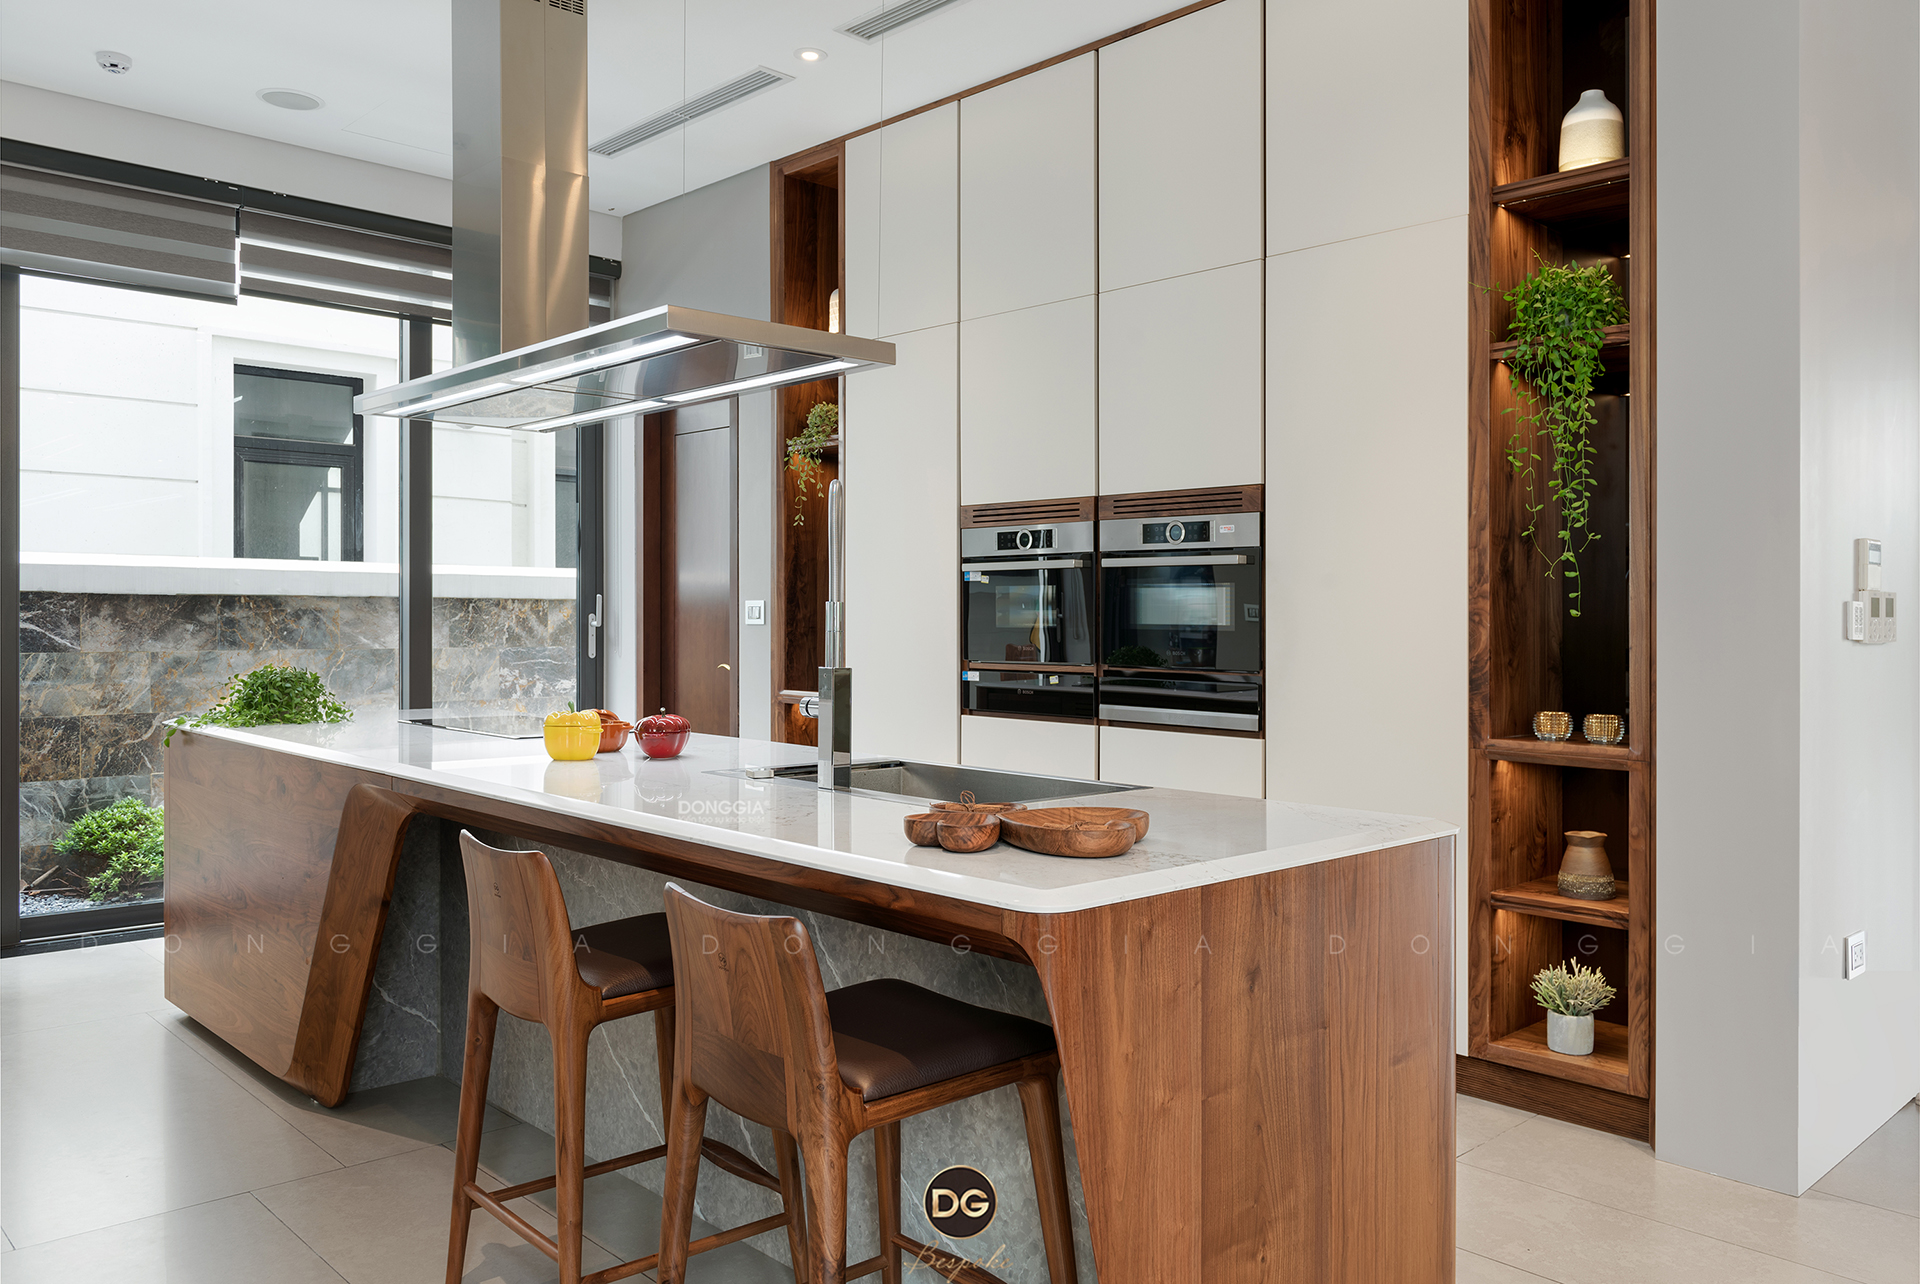 Thiết kế đảo bếp thông minh giúp bạn tiết kiệm không gian của căn phòng và tối ưu hóa các chức năng trong bếp. Các thiết bị bếp mới nhất được tích hợp một cách hoàn hảo với đảo bếp, tạo nên một không gian đẹp và tiện nghi cho bạn thực hiện các hoạt động nấu nướng mà không bị gián đoạn.